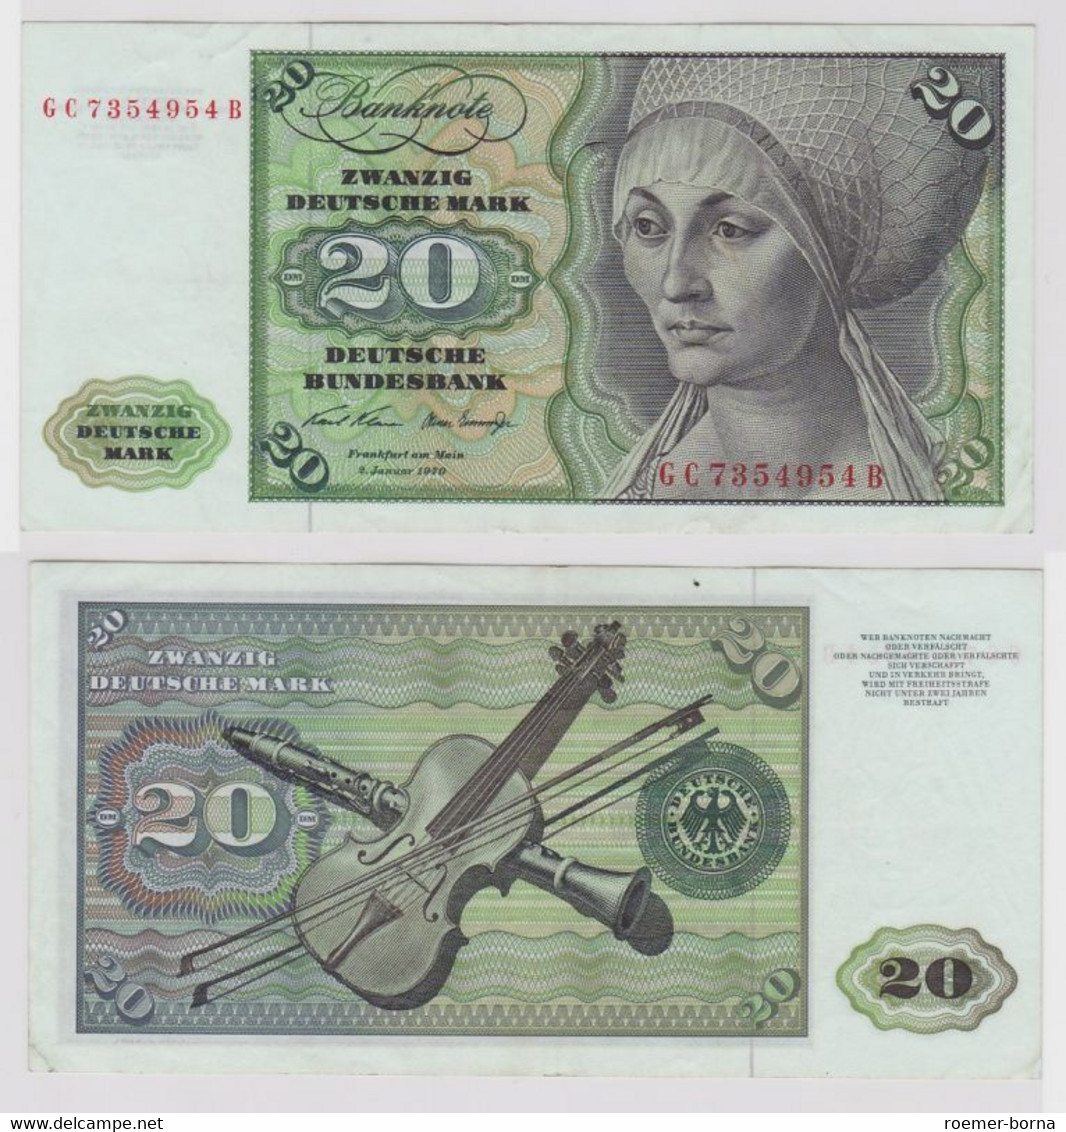 T148575 Banknote 20 DM Deutsche Mark Ro. 271a Schein 2.Jan. 1970 KN GC 7354954 B - 20 DM